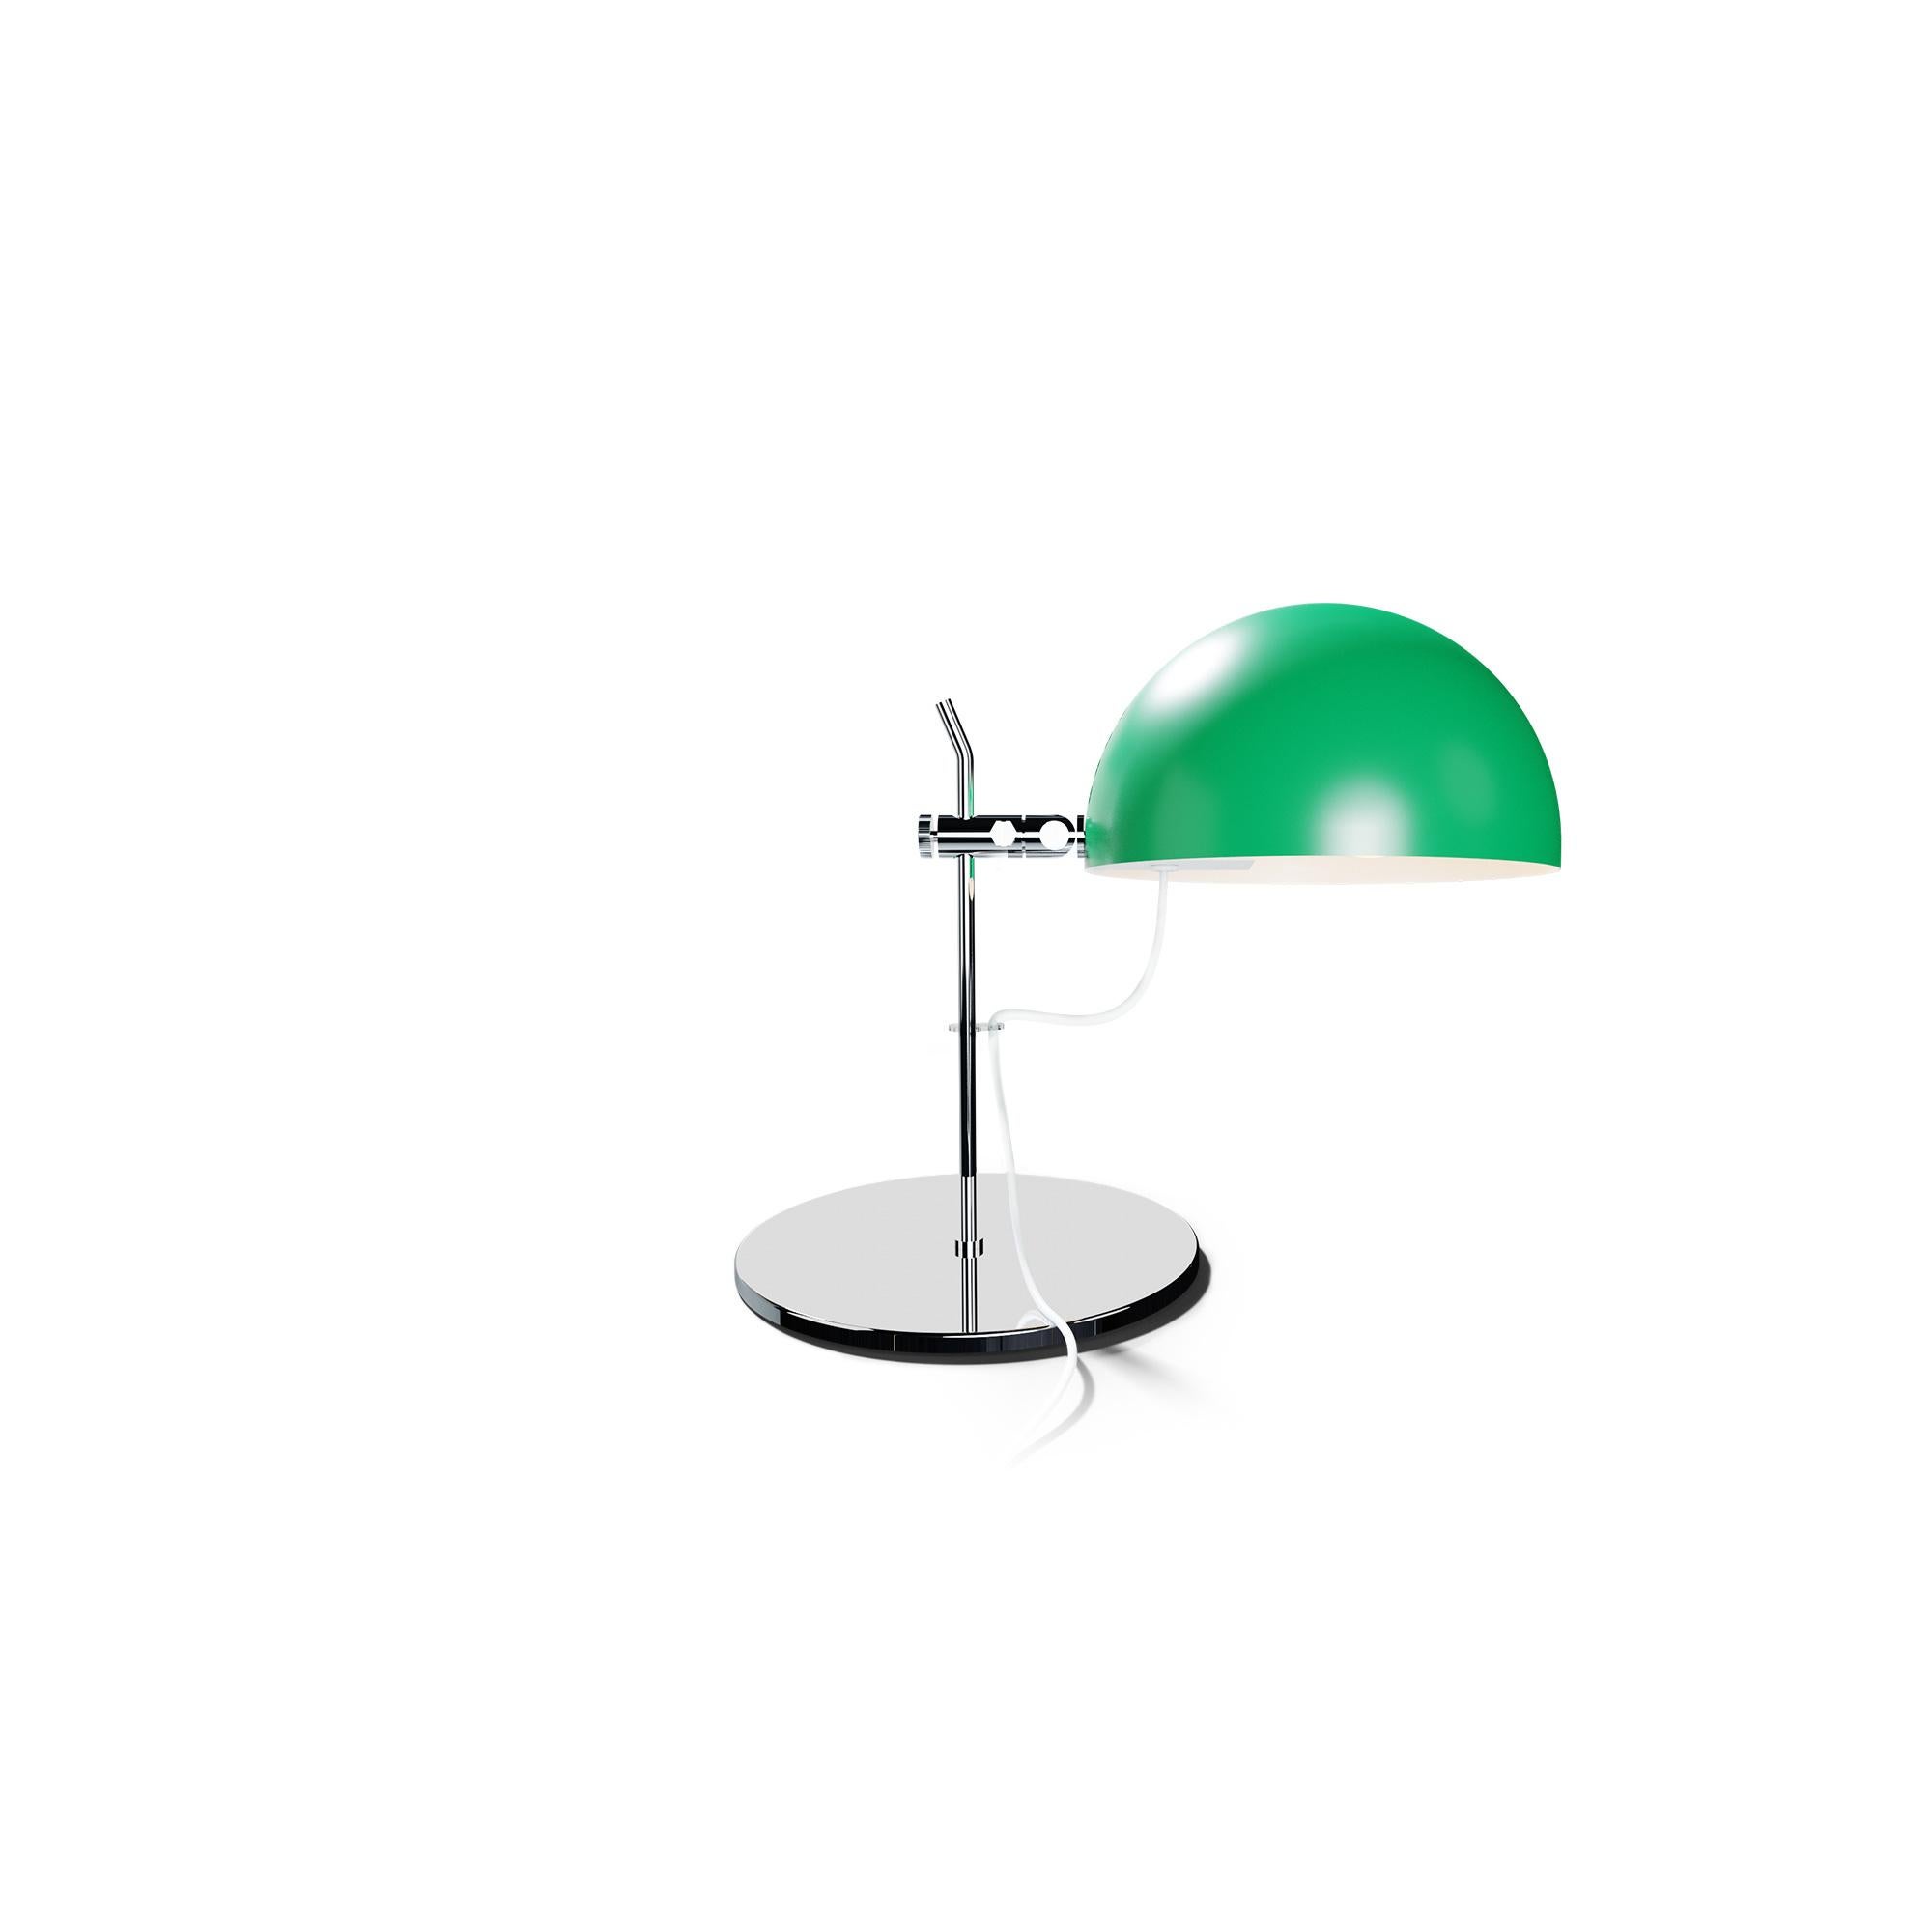 Alain Richard 'A22' Desk Lamp in Black for Disderot For Sale 9